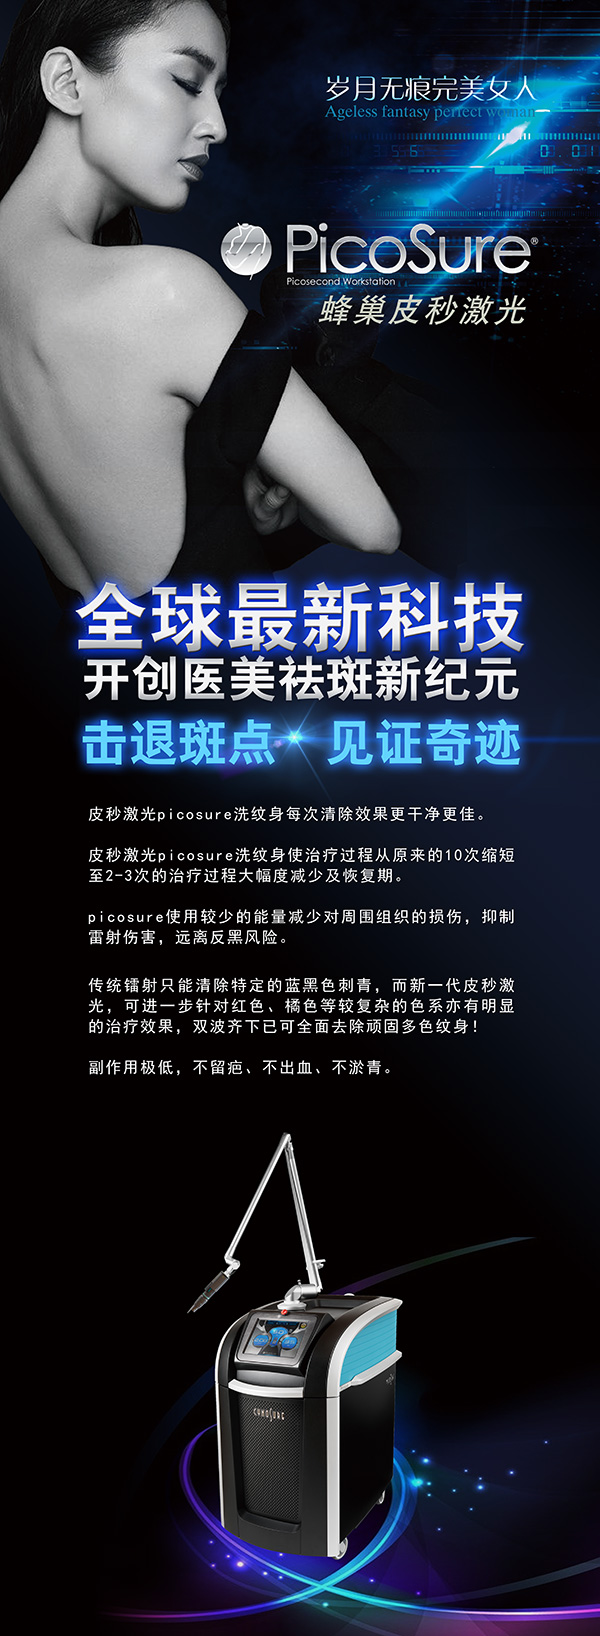 皮秒激光祛斑广告_素材中国sccnn.com